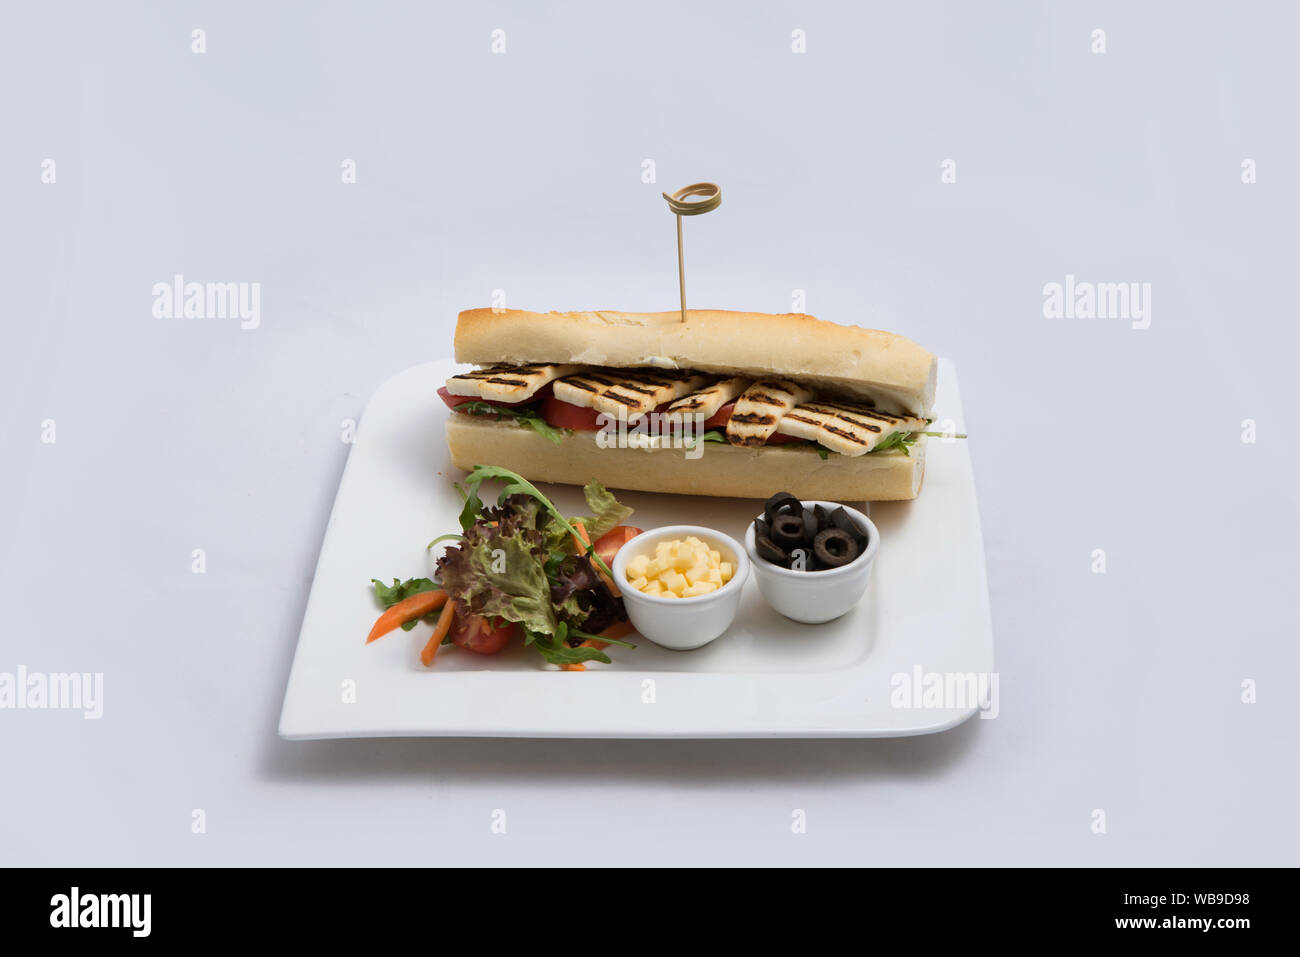 Einen niedrigen Kontrast hero Schuß eines gegrilltem Halloumi Käse Baguette mit Oliven & Salat auf der Seite, auf einer minimalen weißen Hintergrund mit einem Winkel von 45 Grad f Stockfoto